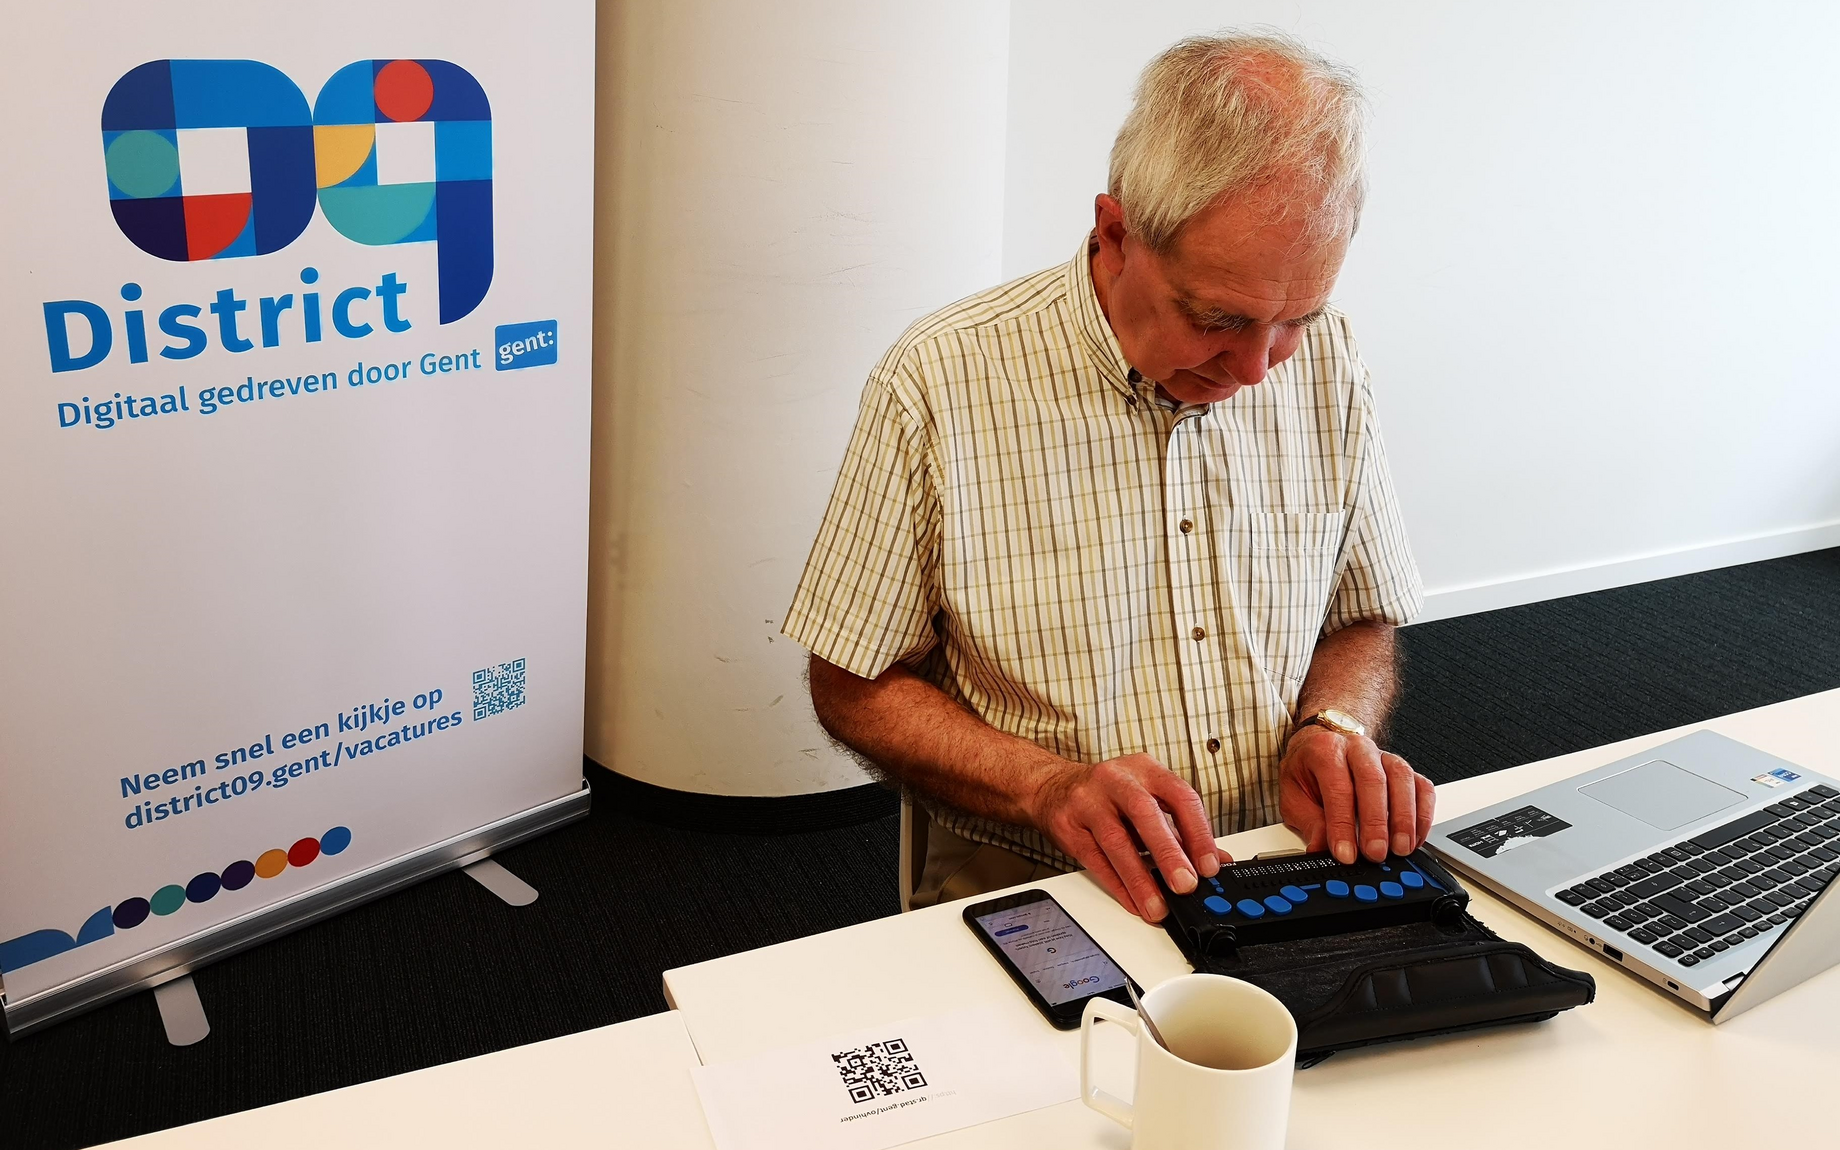 Gentenaar Herman probeert de nieuwe web-app uit met zijn brailletoetsenbord